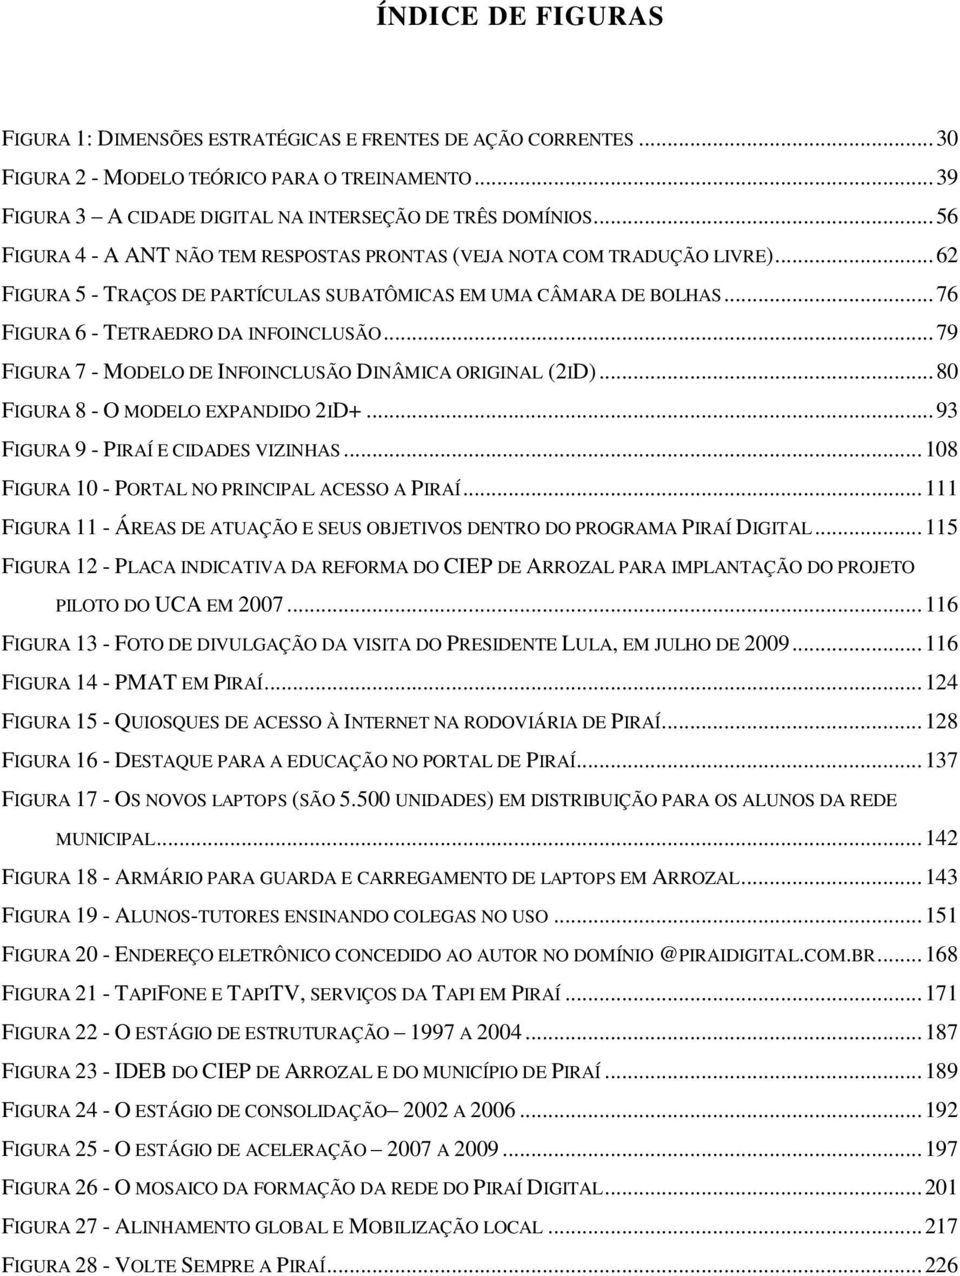 .. 79 FIGURA 7 - MODELO DE INFOINCLUSÃO DINÂMICA ORIGINAL (2ID)... 80 FIGURA 8 - O MODELO EXPANDIDO 2ID+... 93 FIGURA 9 - PIRAÍ E CIDADES VIZINHAS... 108 FIGURA 10 - PORTAL NO PRINCIPAL ACESSO A PIRAÍ.